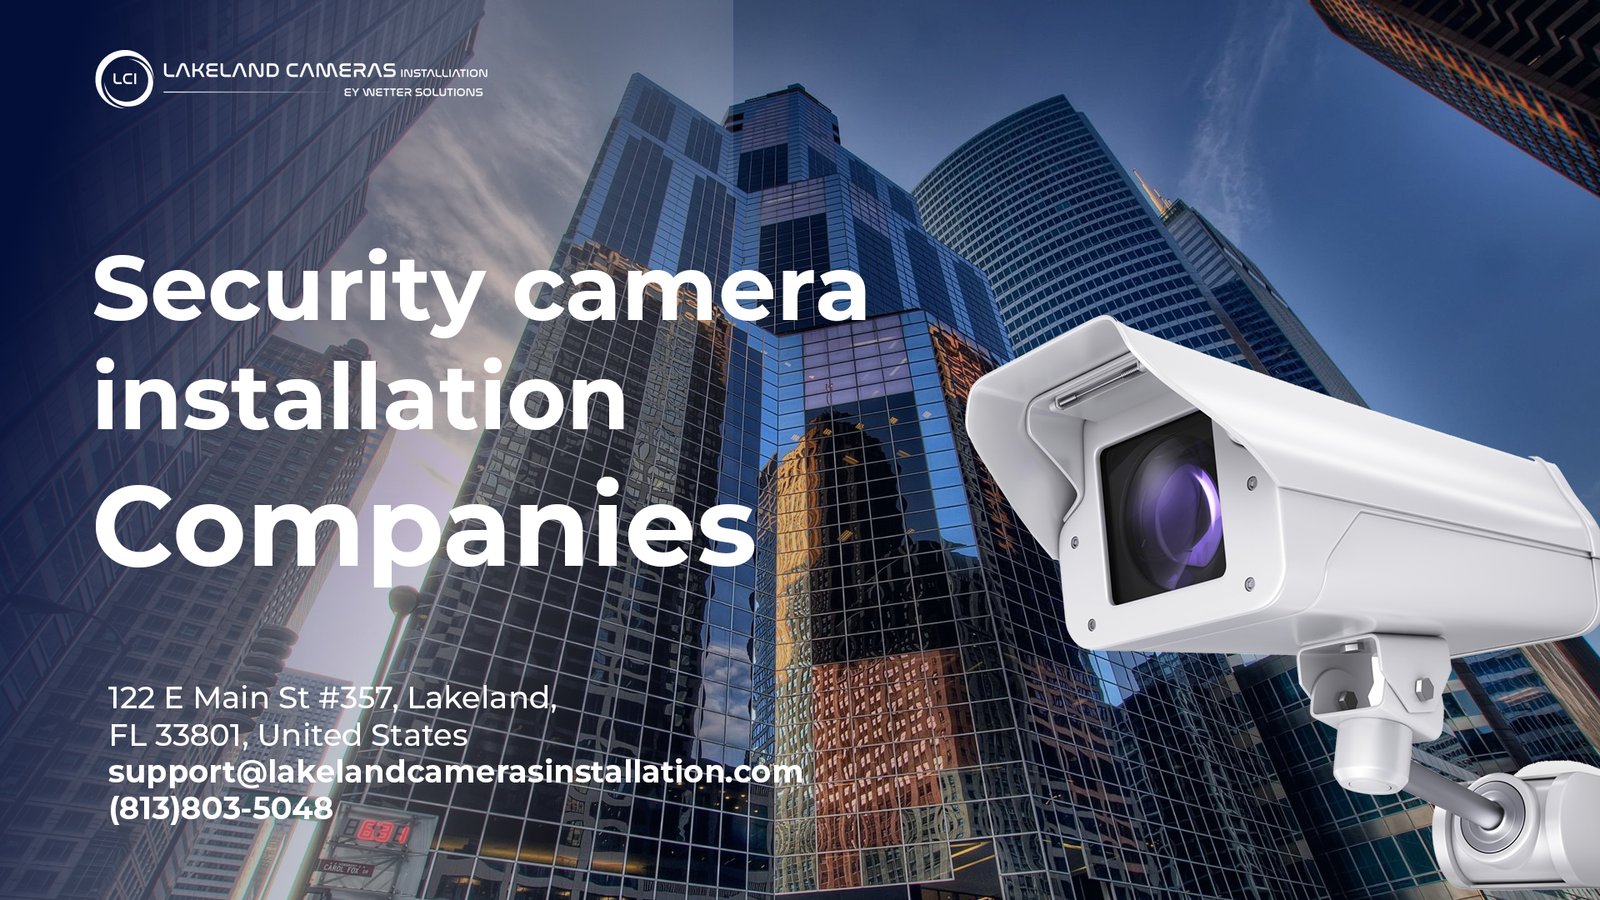 Security camera installation companies in Orlando